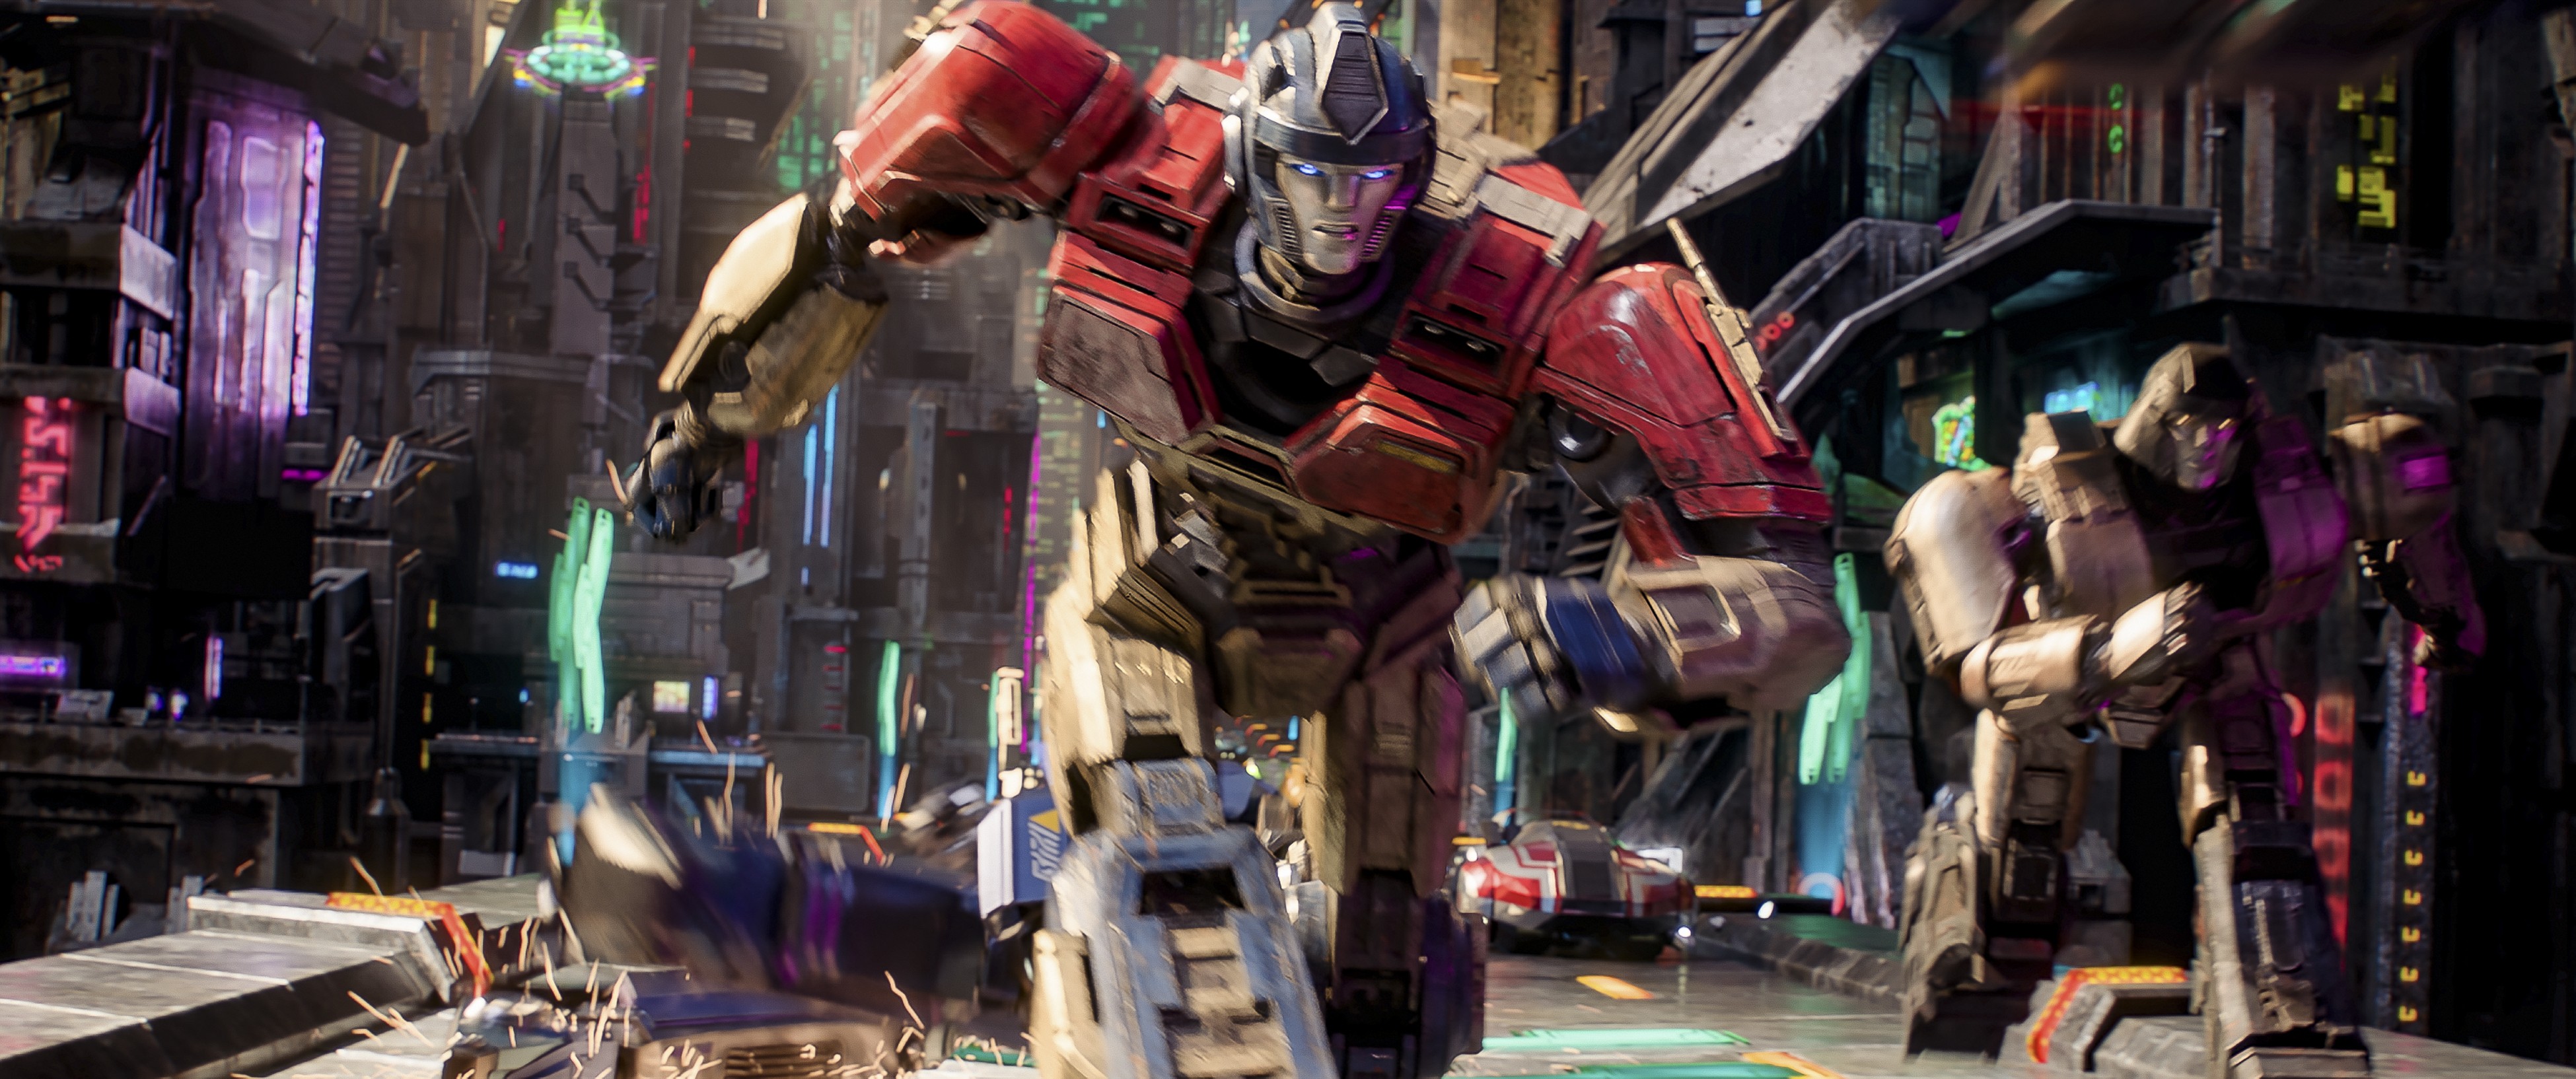 'Transformers Một' tung trailer mới 'đỉnh nóc' với câu chuyện 'từ bạn thành thù' của Optimus và Megatron